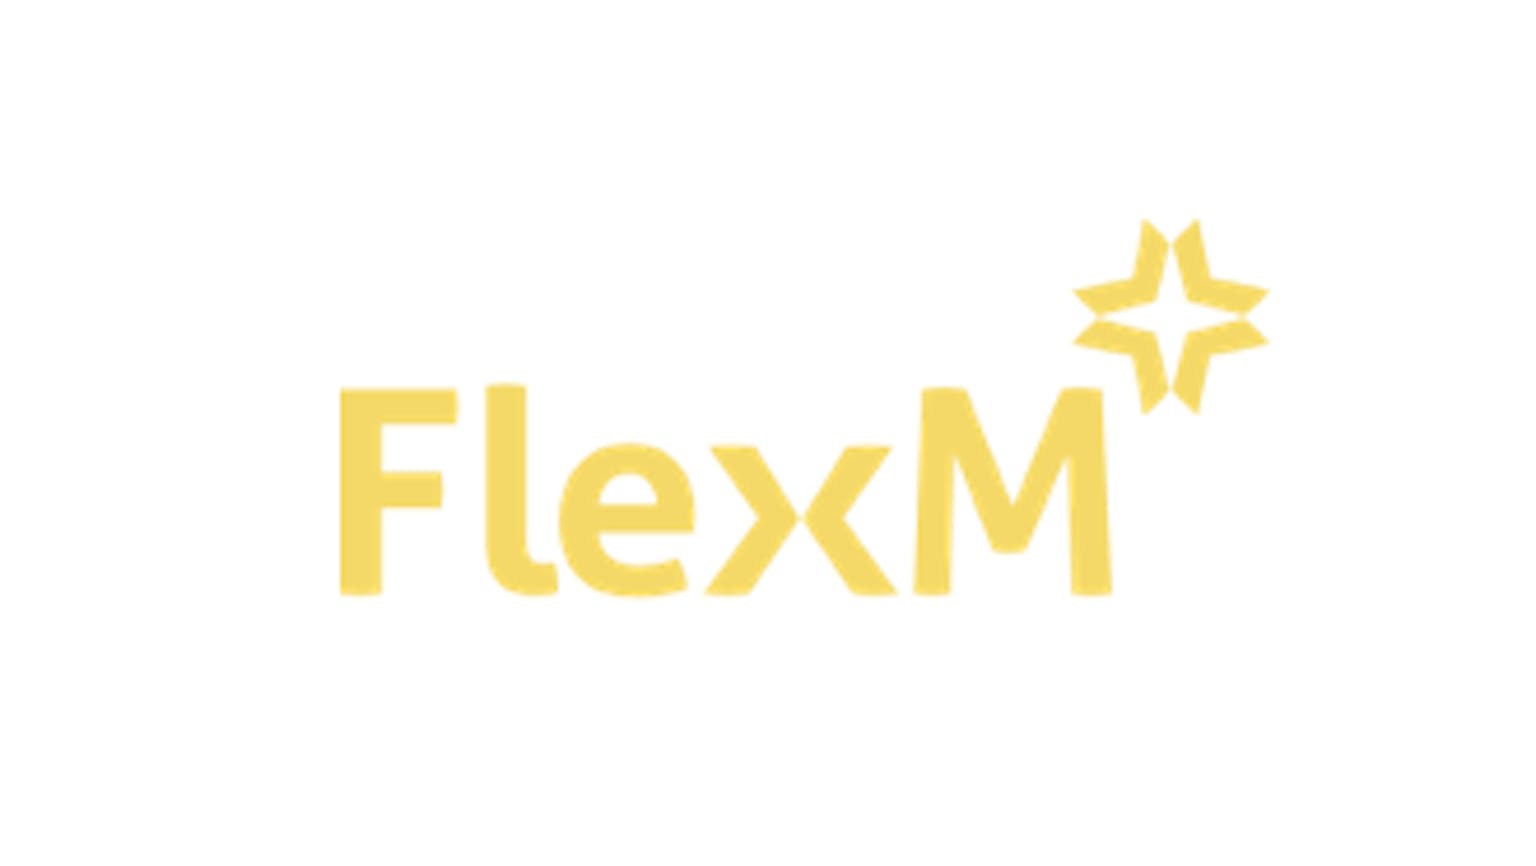 FlexM